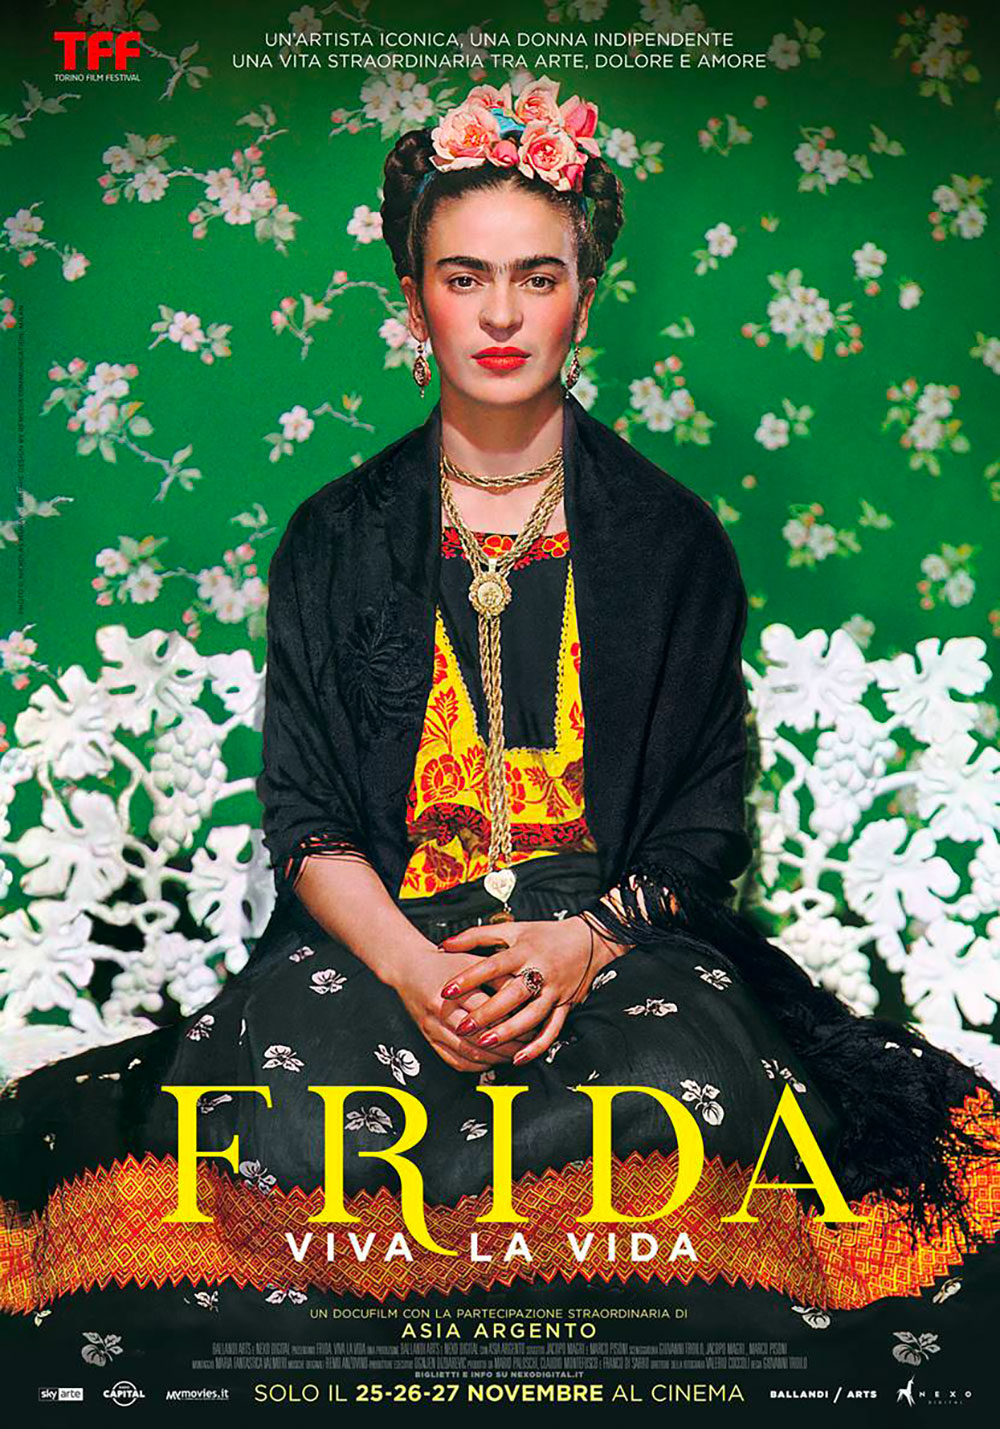  Dall'articolo: Frida - Viva la Vida, il poster ufficiale del film.